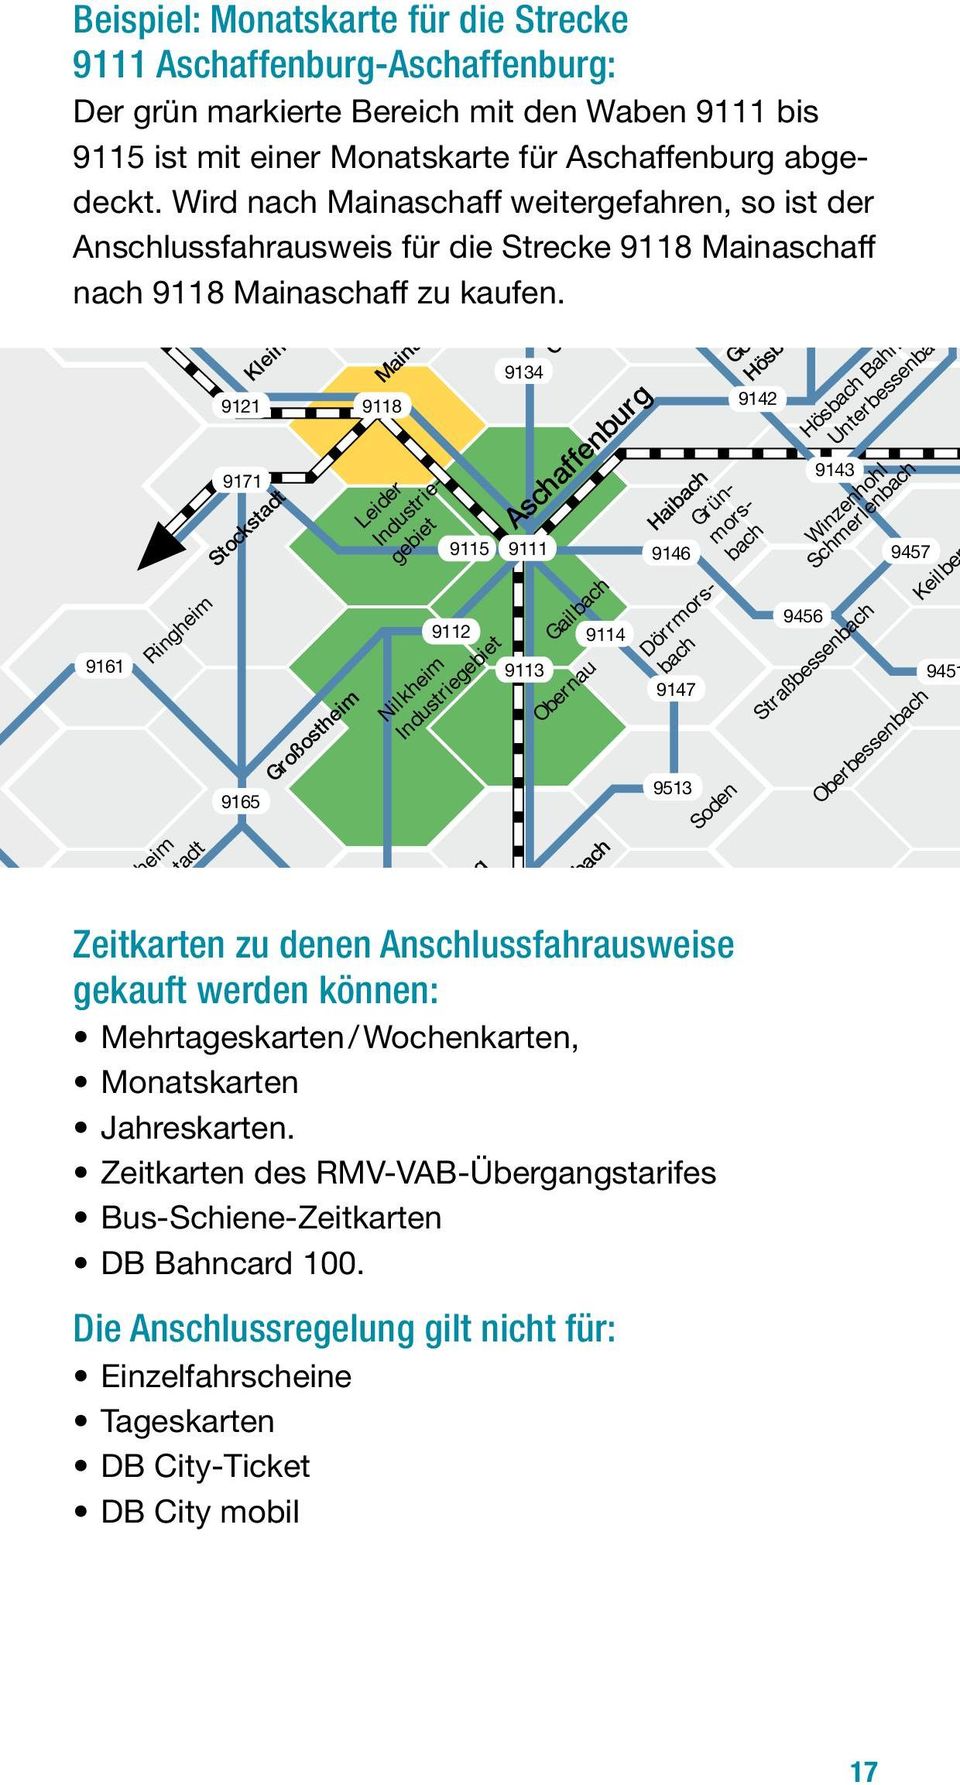 Wochenkarten, Monatskarten Jahreskarten. Zeitkarten des RMV-VAB-Übergangstarifes Bus-Schiene-Zeitkarten DB Bahncard 100.